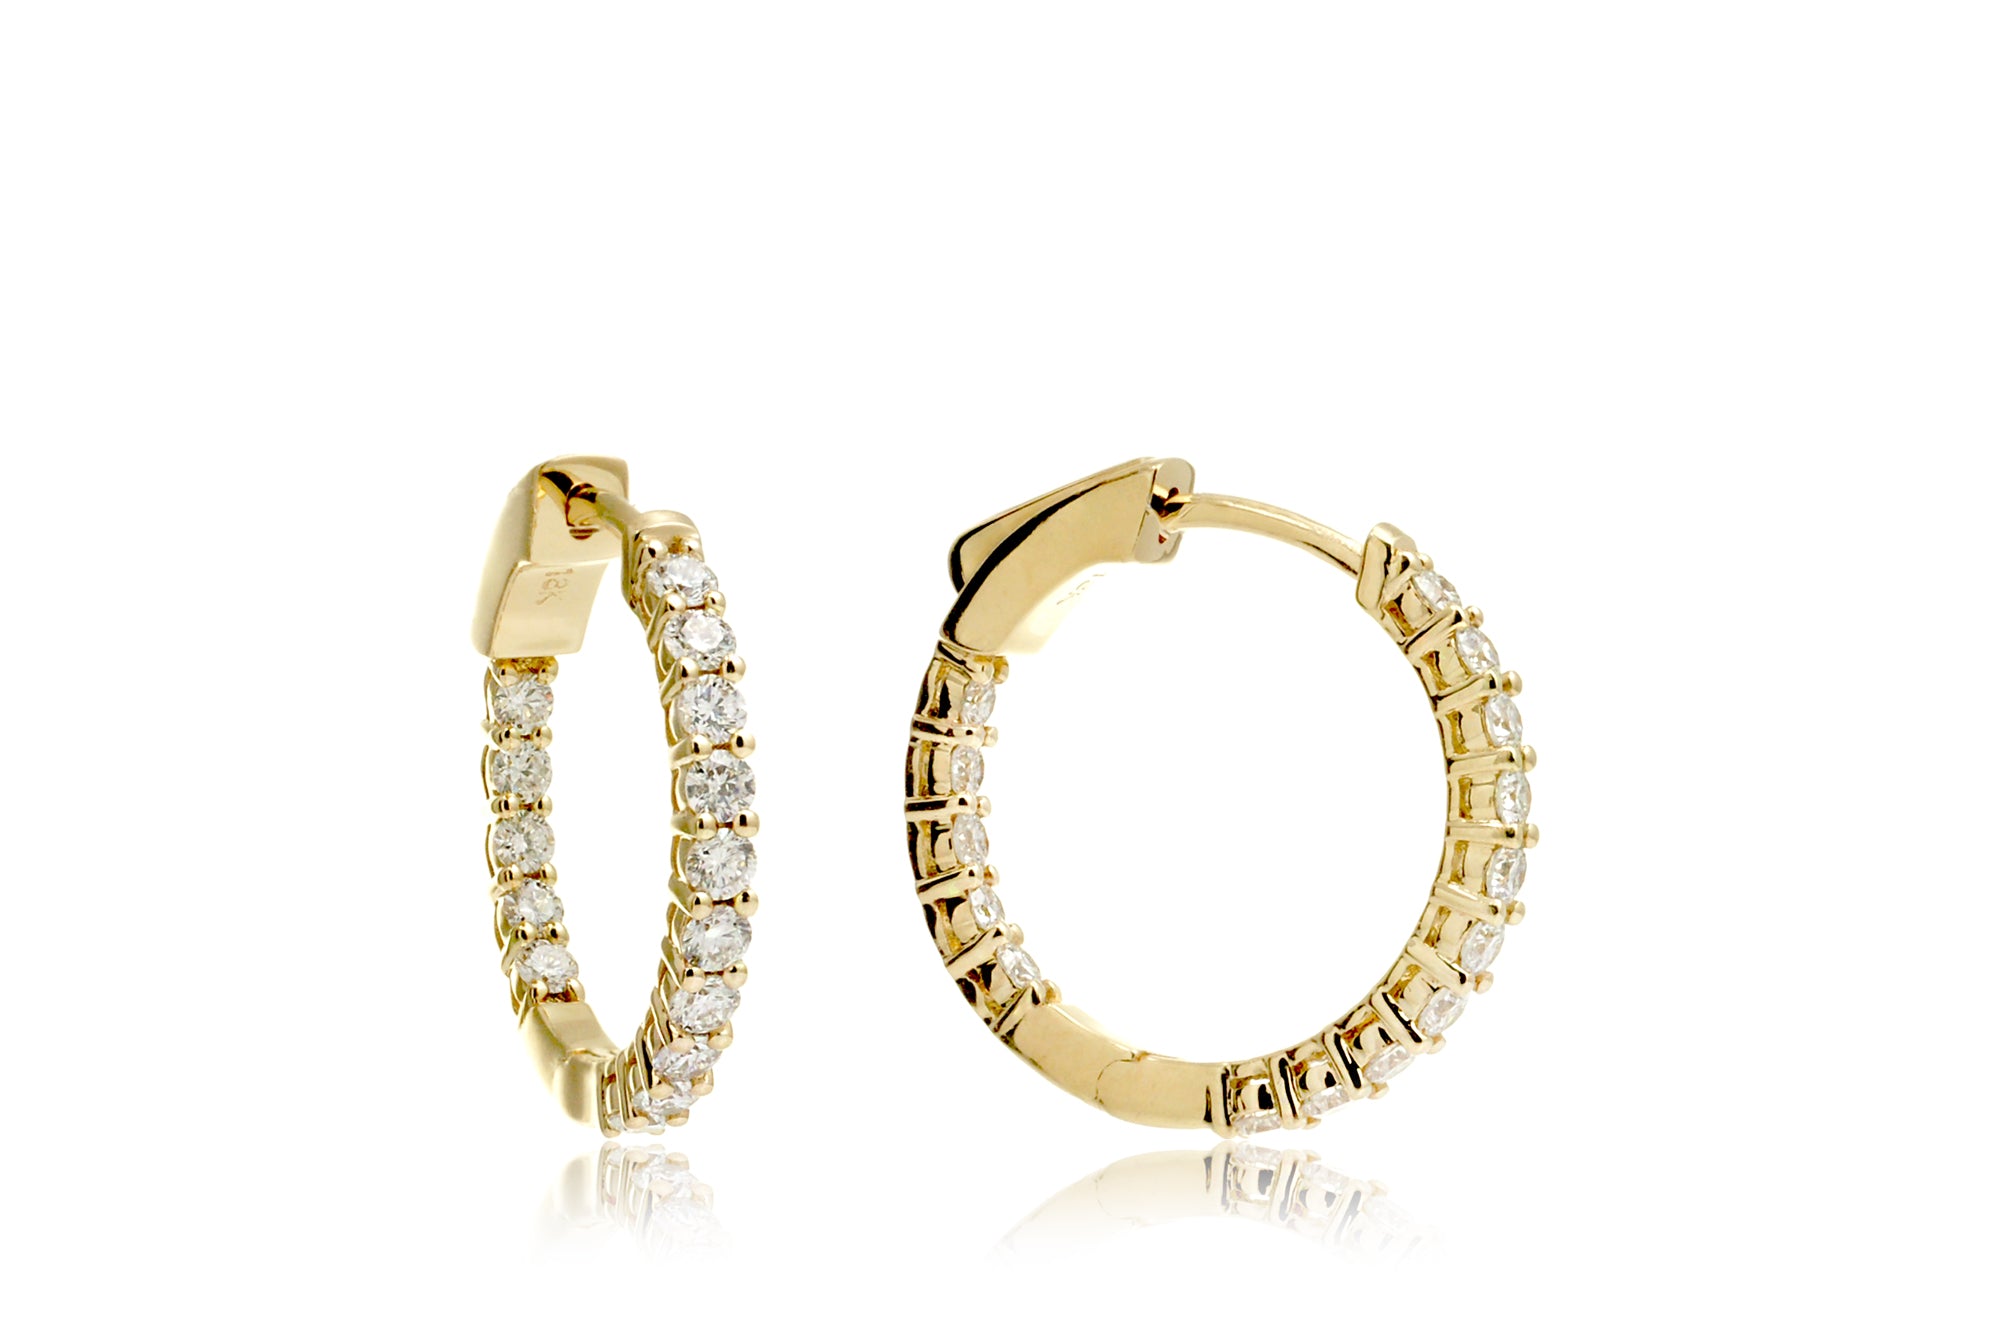 Inside out eternity diamond hoop earrings 3/4 inch 1 carat yellow gold